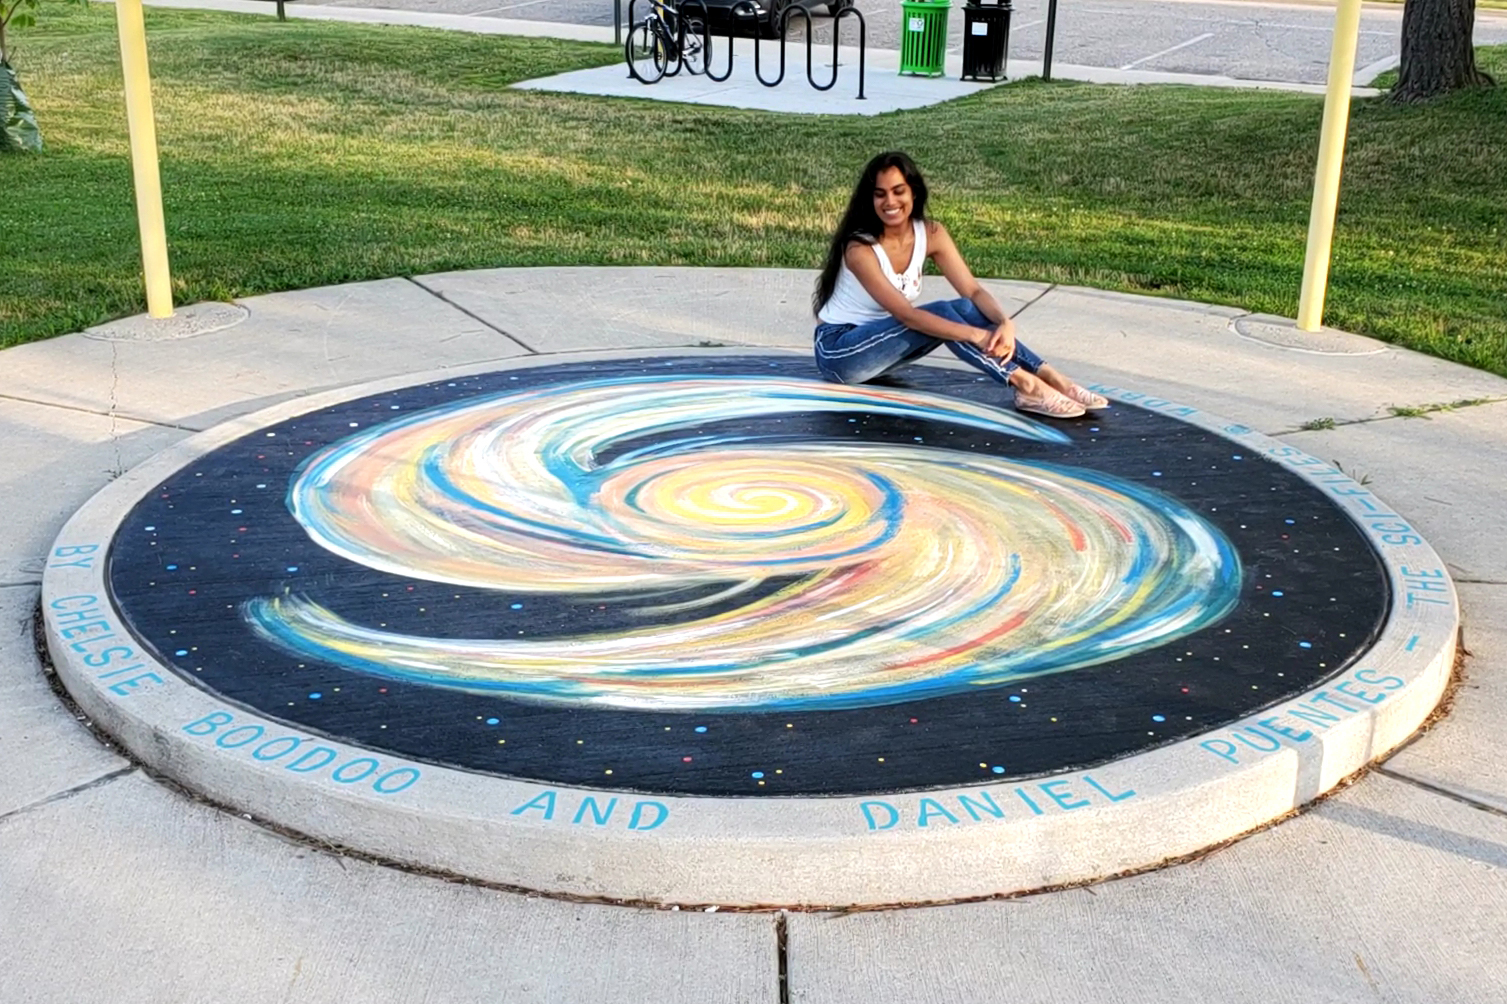 Woman posing with sidewalk chalk art